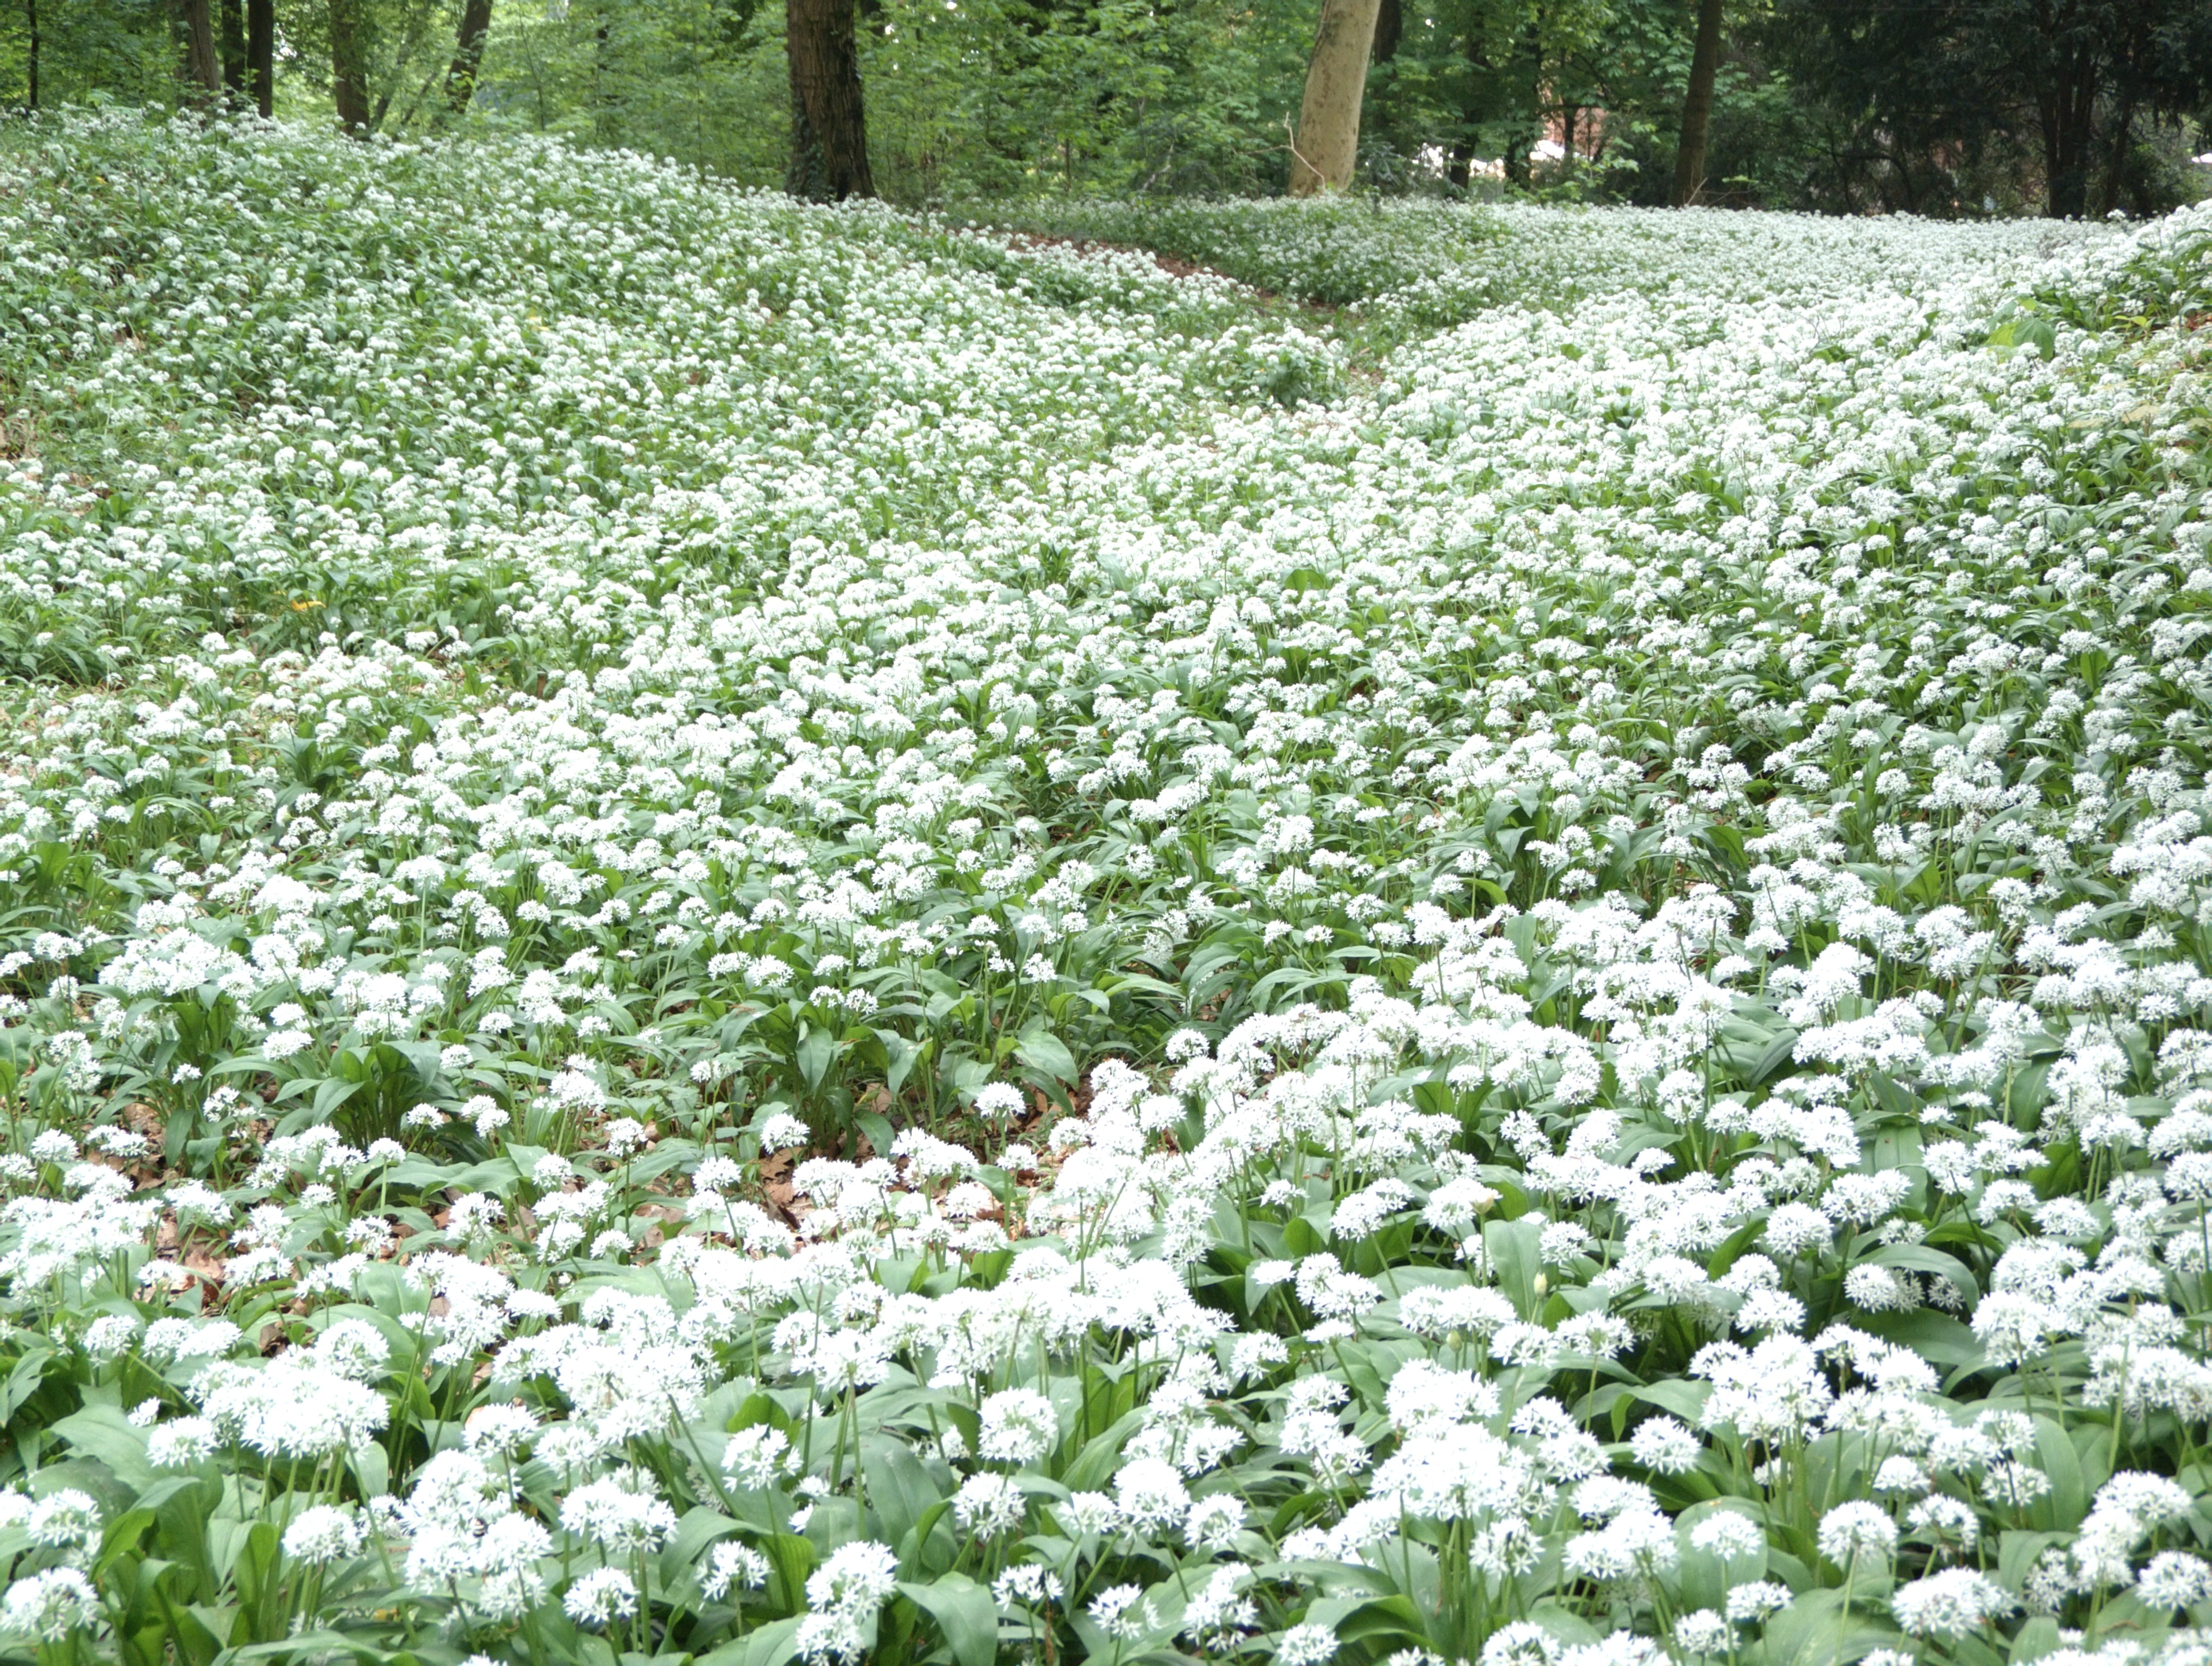 Monza (Monza e Brianza, Italy): Wild garlic flowers in the Park of Monza - Monza (Monza e Brianza, Italy)